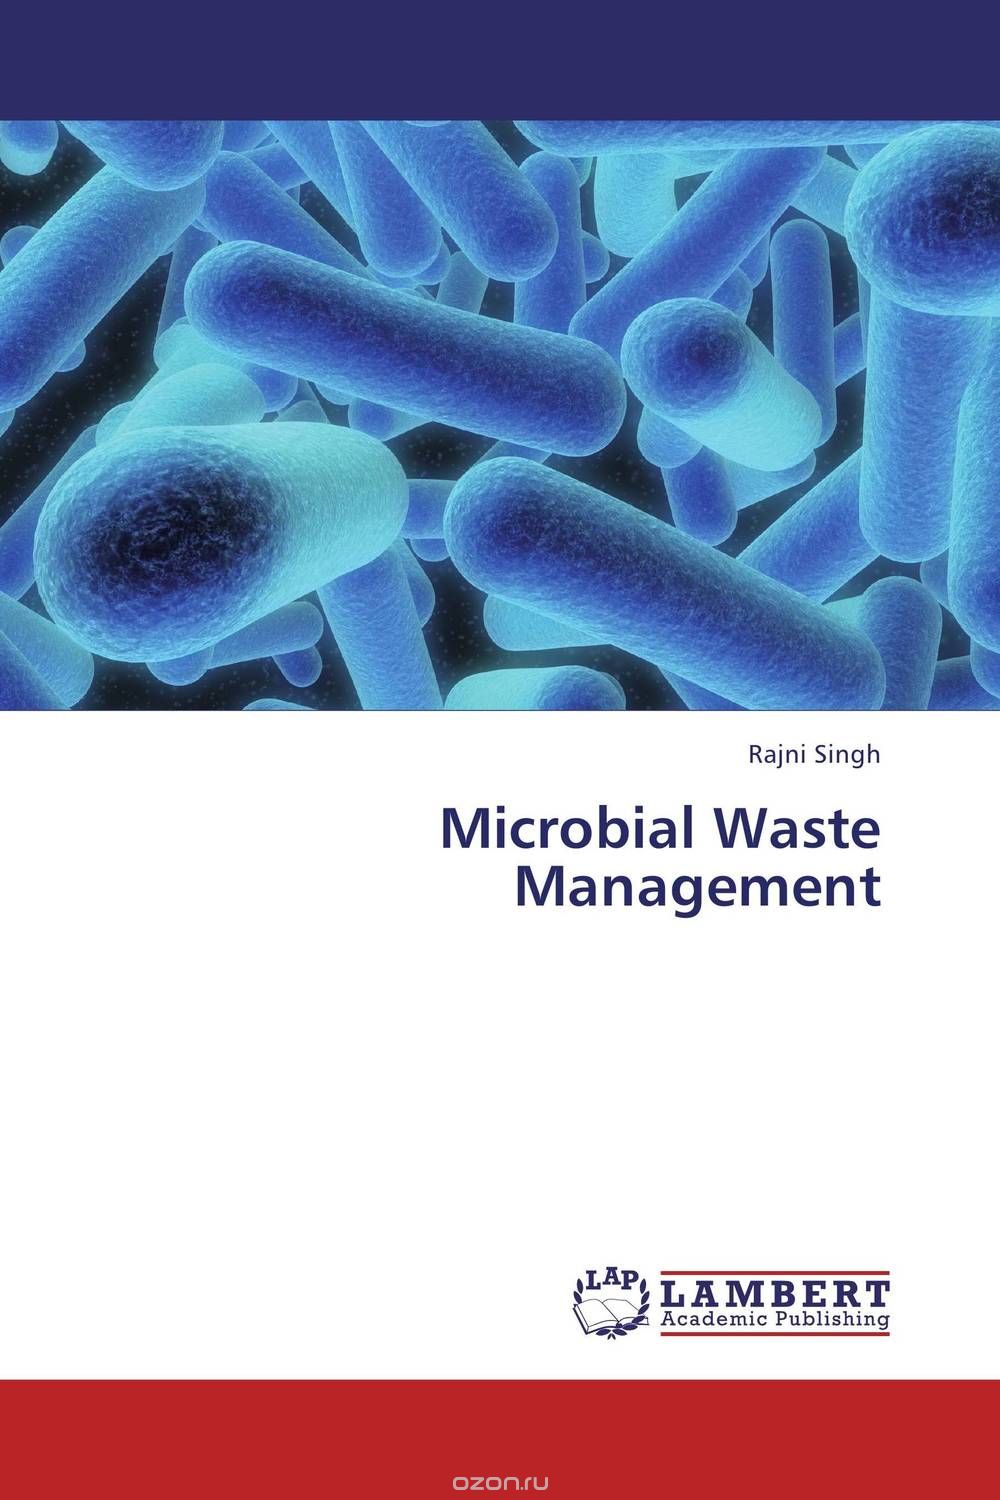 Скачать книгу "Microbial Waste Management"